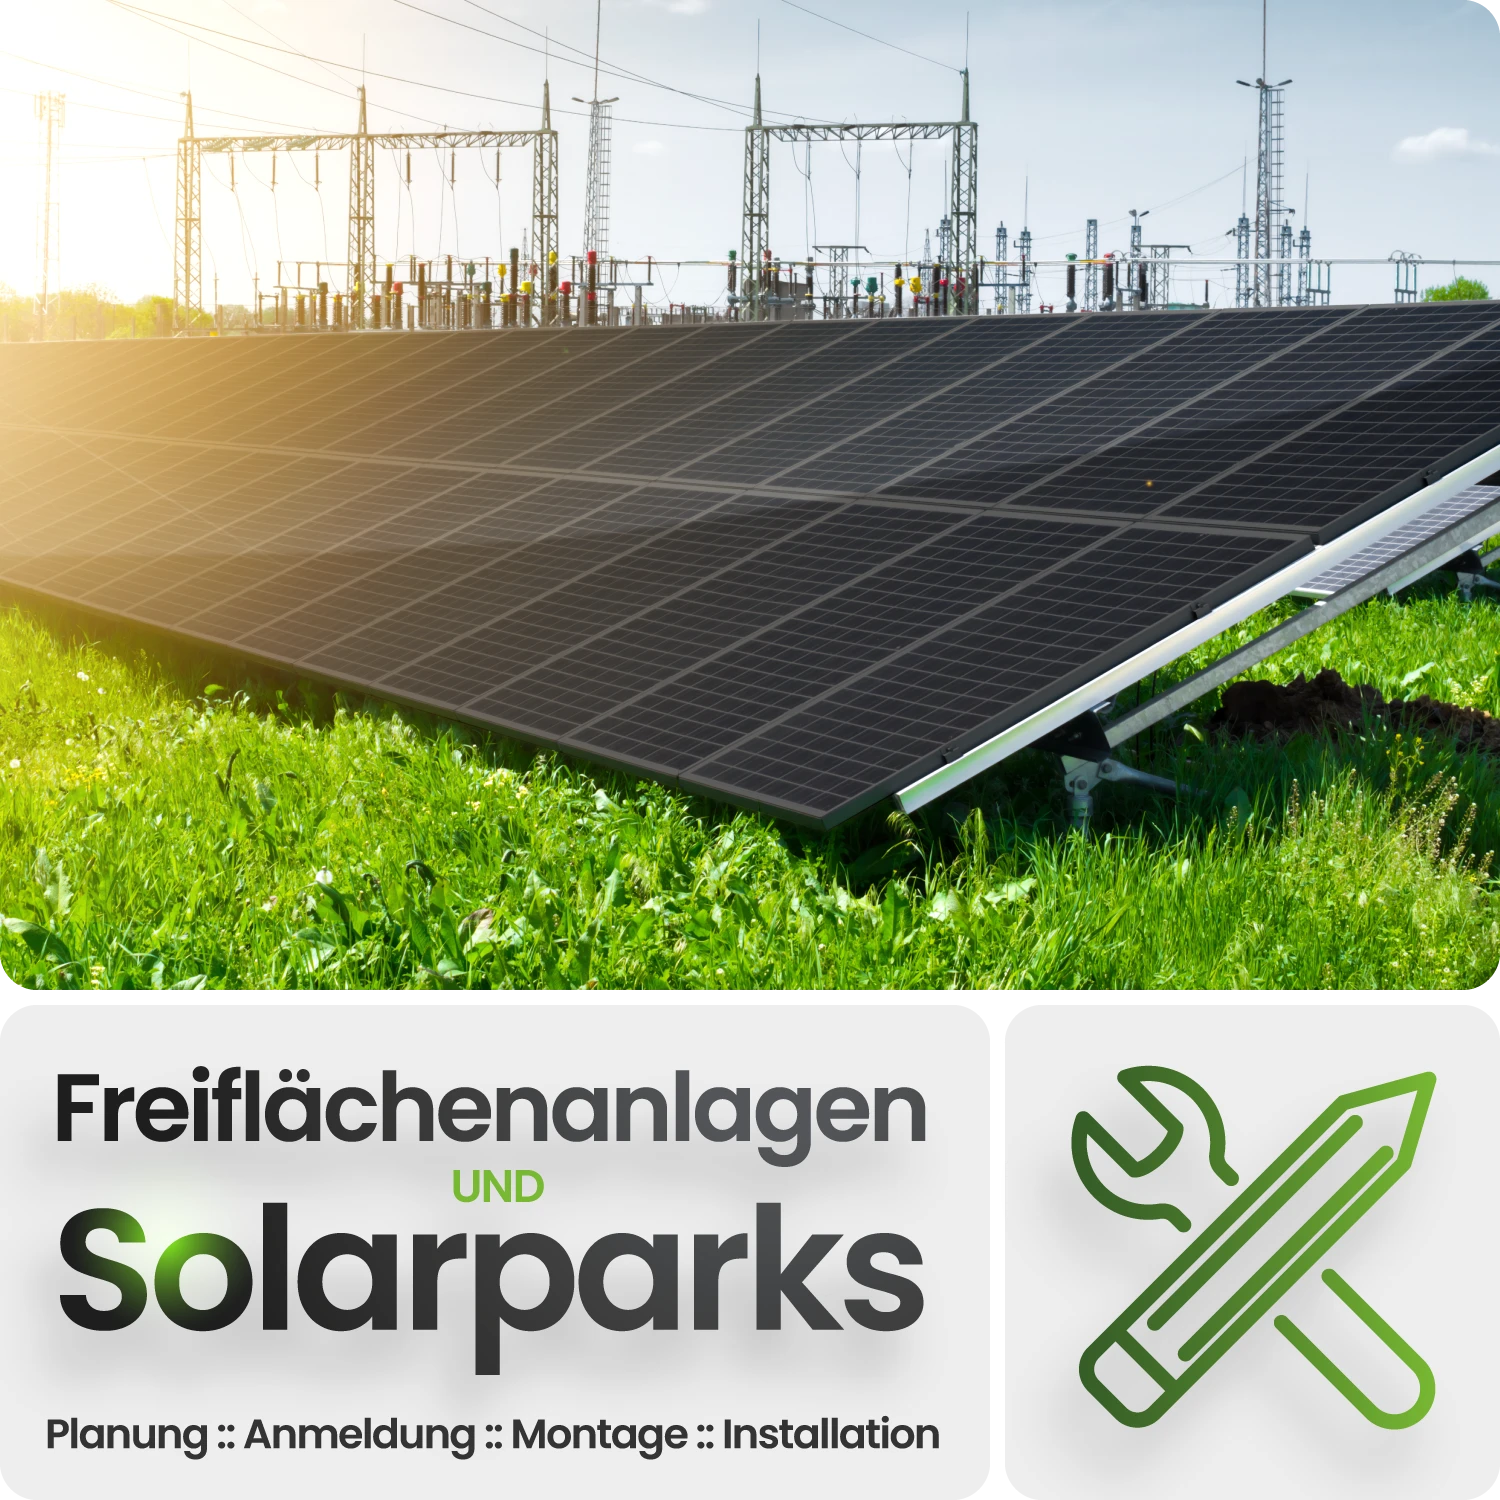 PV Freiflächenanlagen / Solarparks (Planung, Anmeldung, Montage, Installation & Wartung)